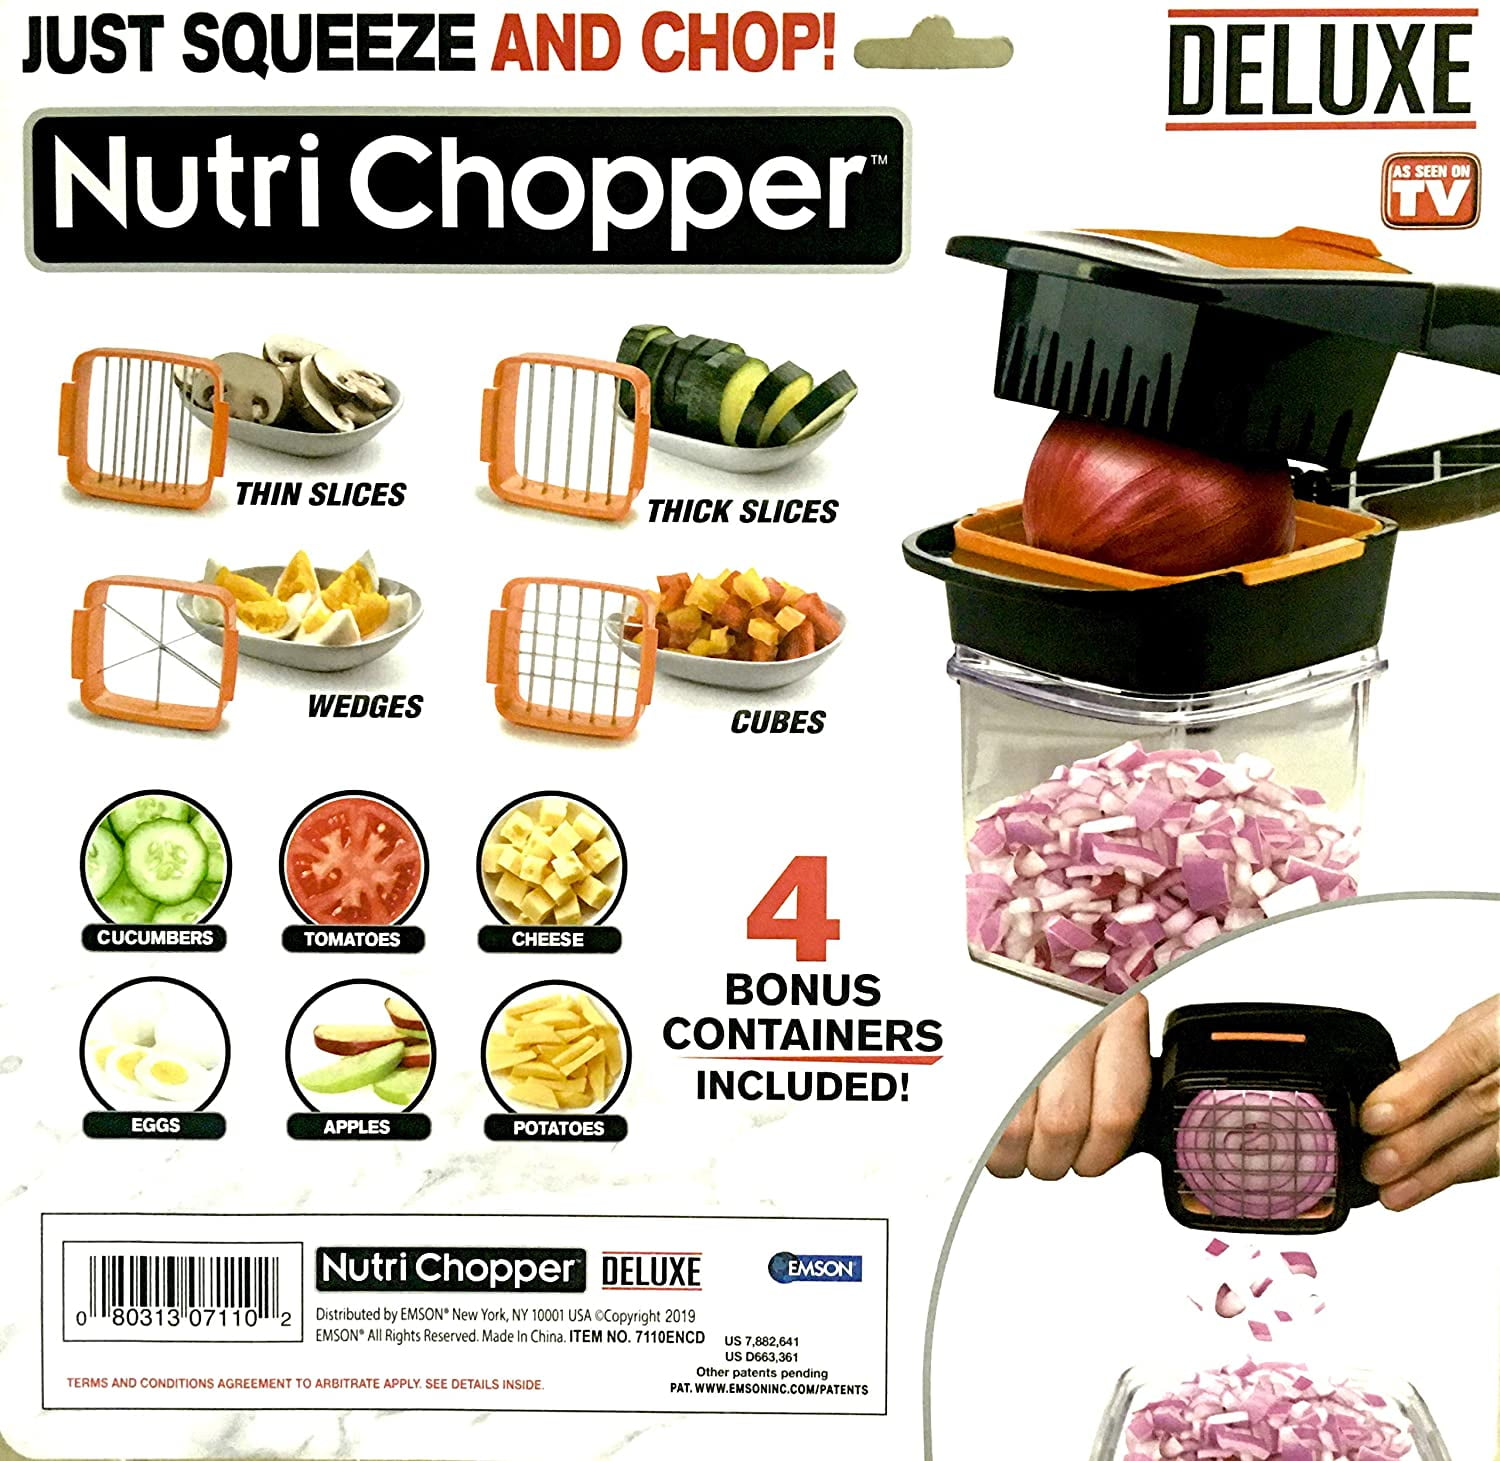 Squeeze & Chop with Nutri Chopper 